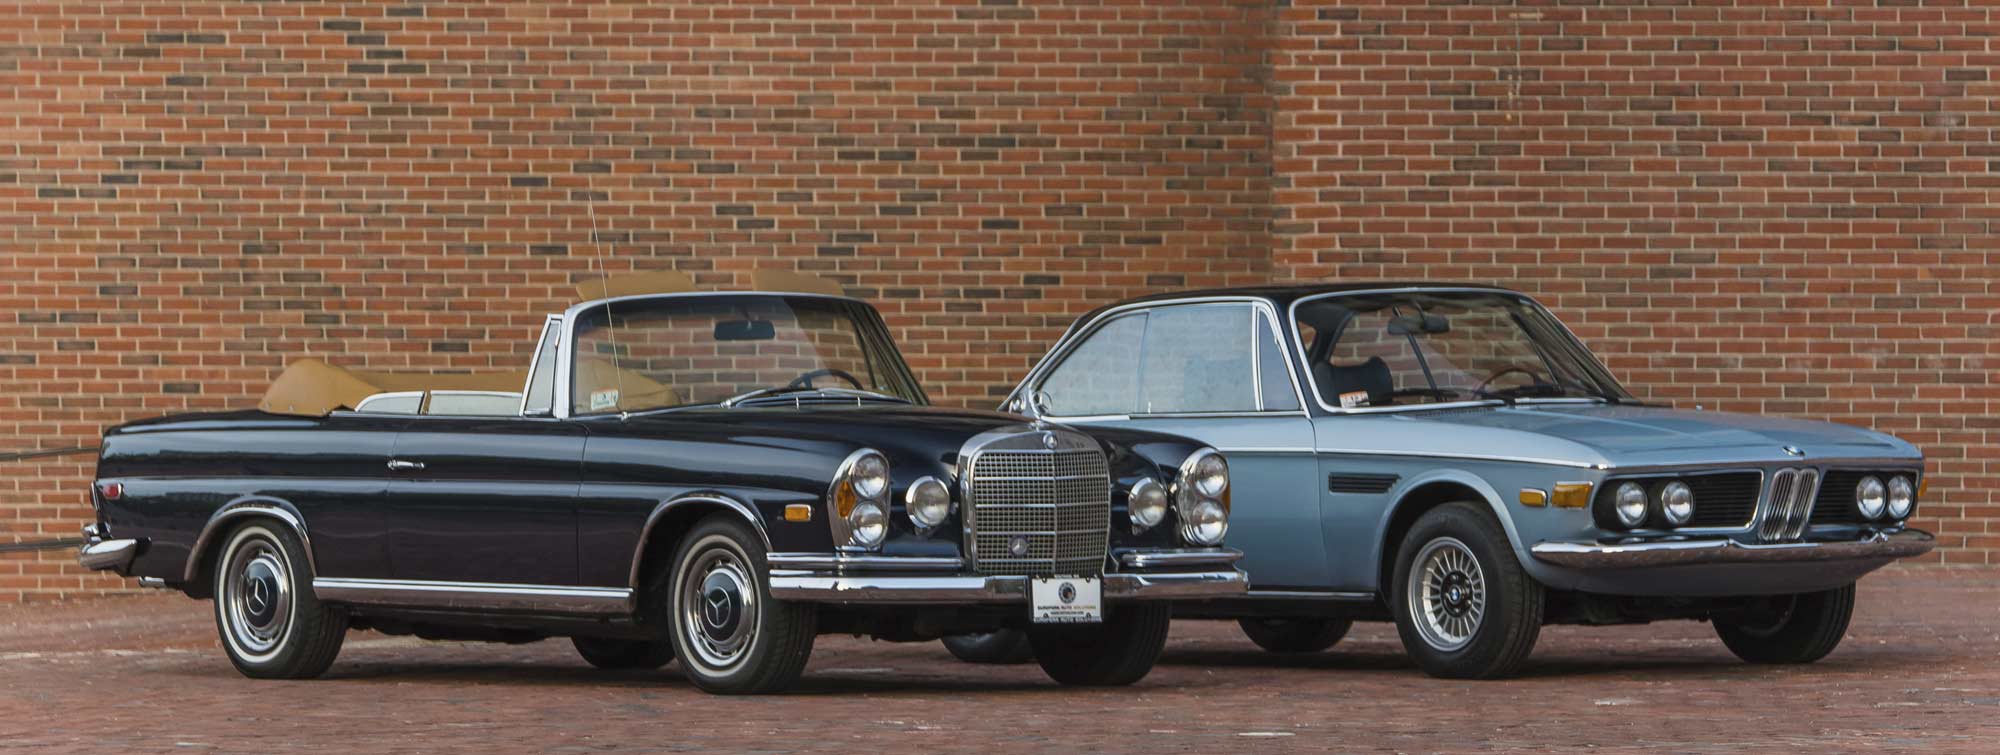 Vintage Mercedes-Benz 280 SE and Vintage BMW 3.0CS